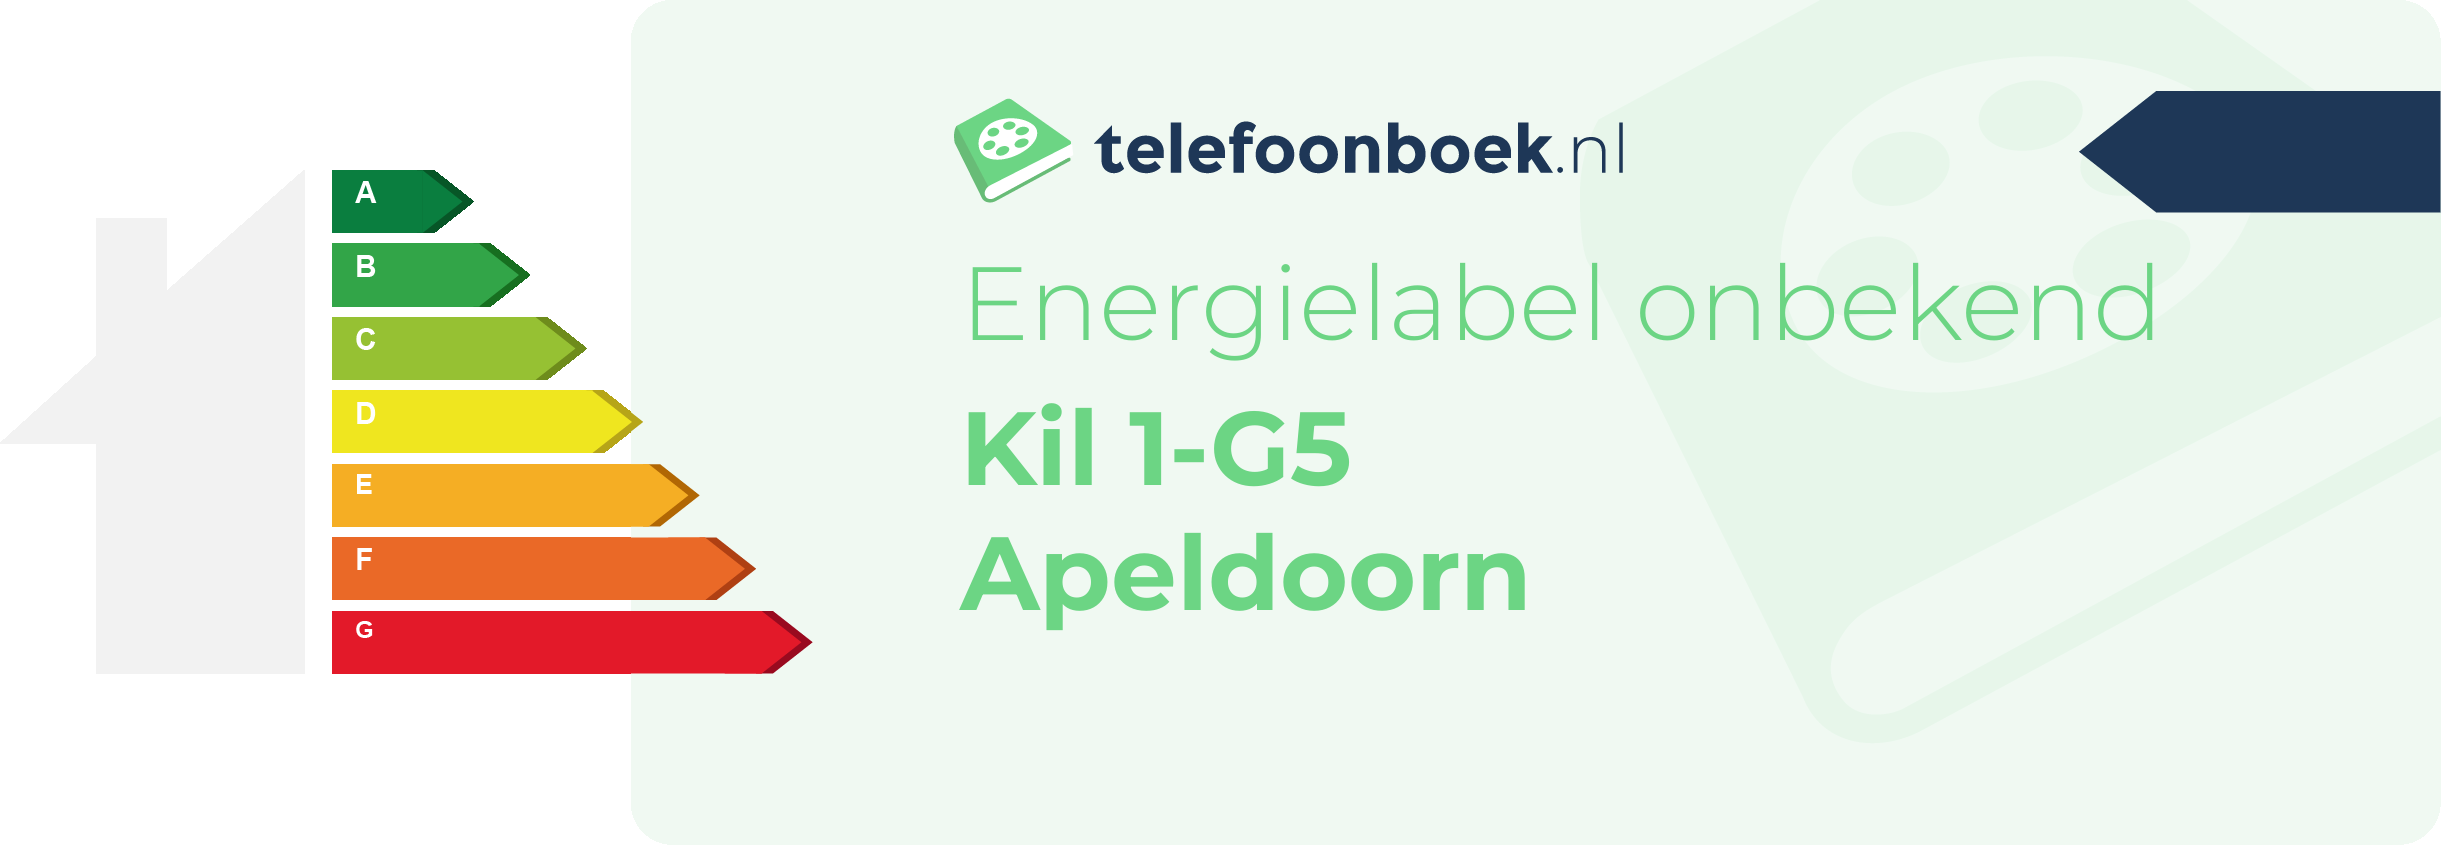 Energielabel Kil 1-G5 Apeldoorn